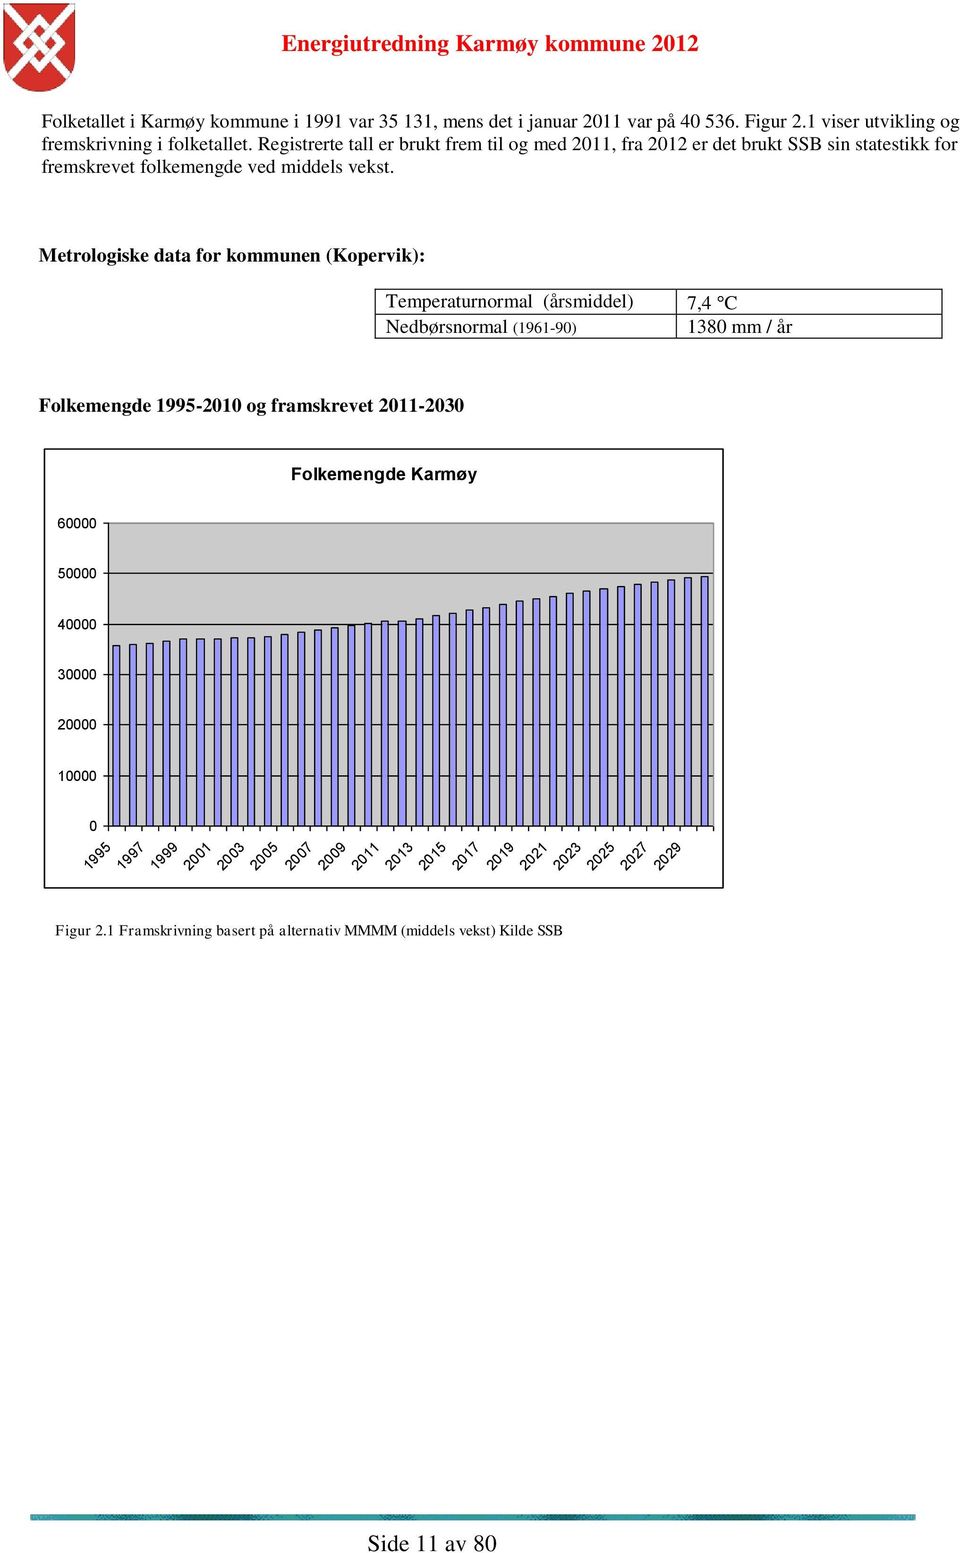 Metrologiske data for kommunen (Kopervik): Temperaturnormal (årsmiddel) Nedbørsnormal (1961-90) 7,4 C 1380 mm / år Folkemengde 1995-2010 og framskrevet 2011-2030